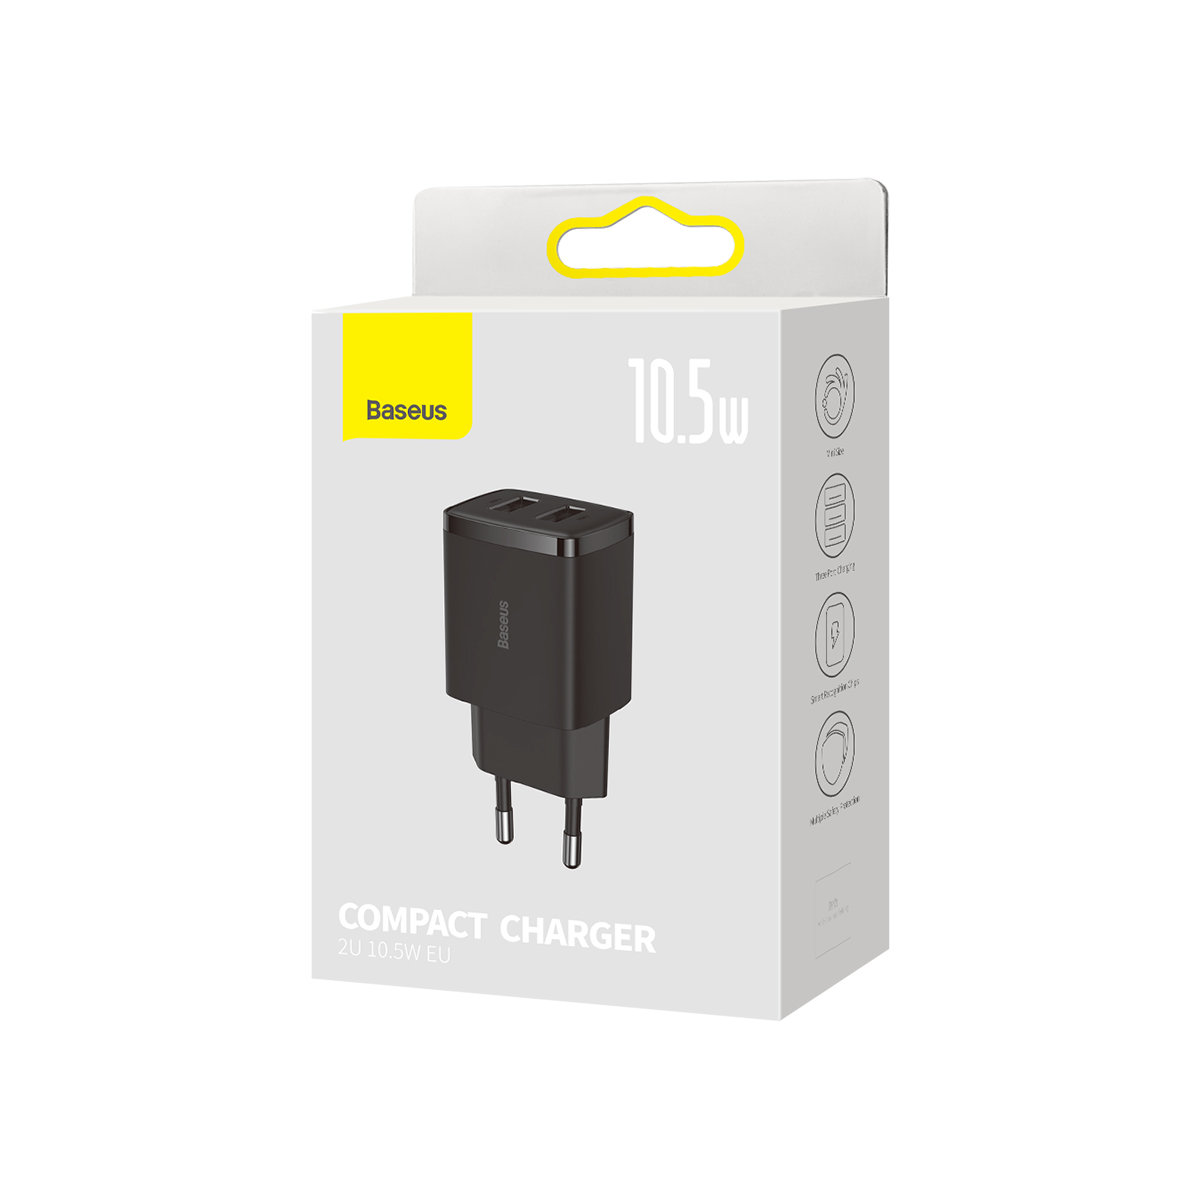 adowarka sieciowa Baseus Compact 2x USB 10.5W CCXJ010202 czarna HUAWEI Honor 4C / 4